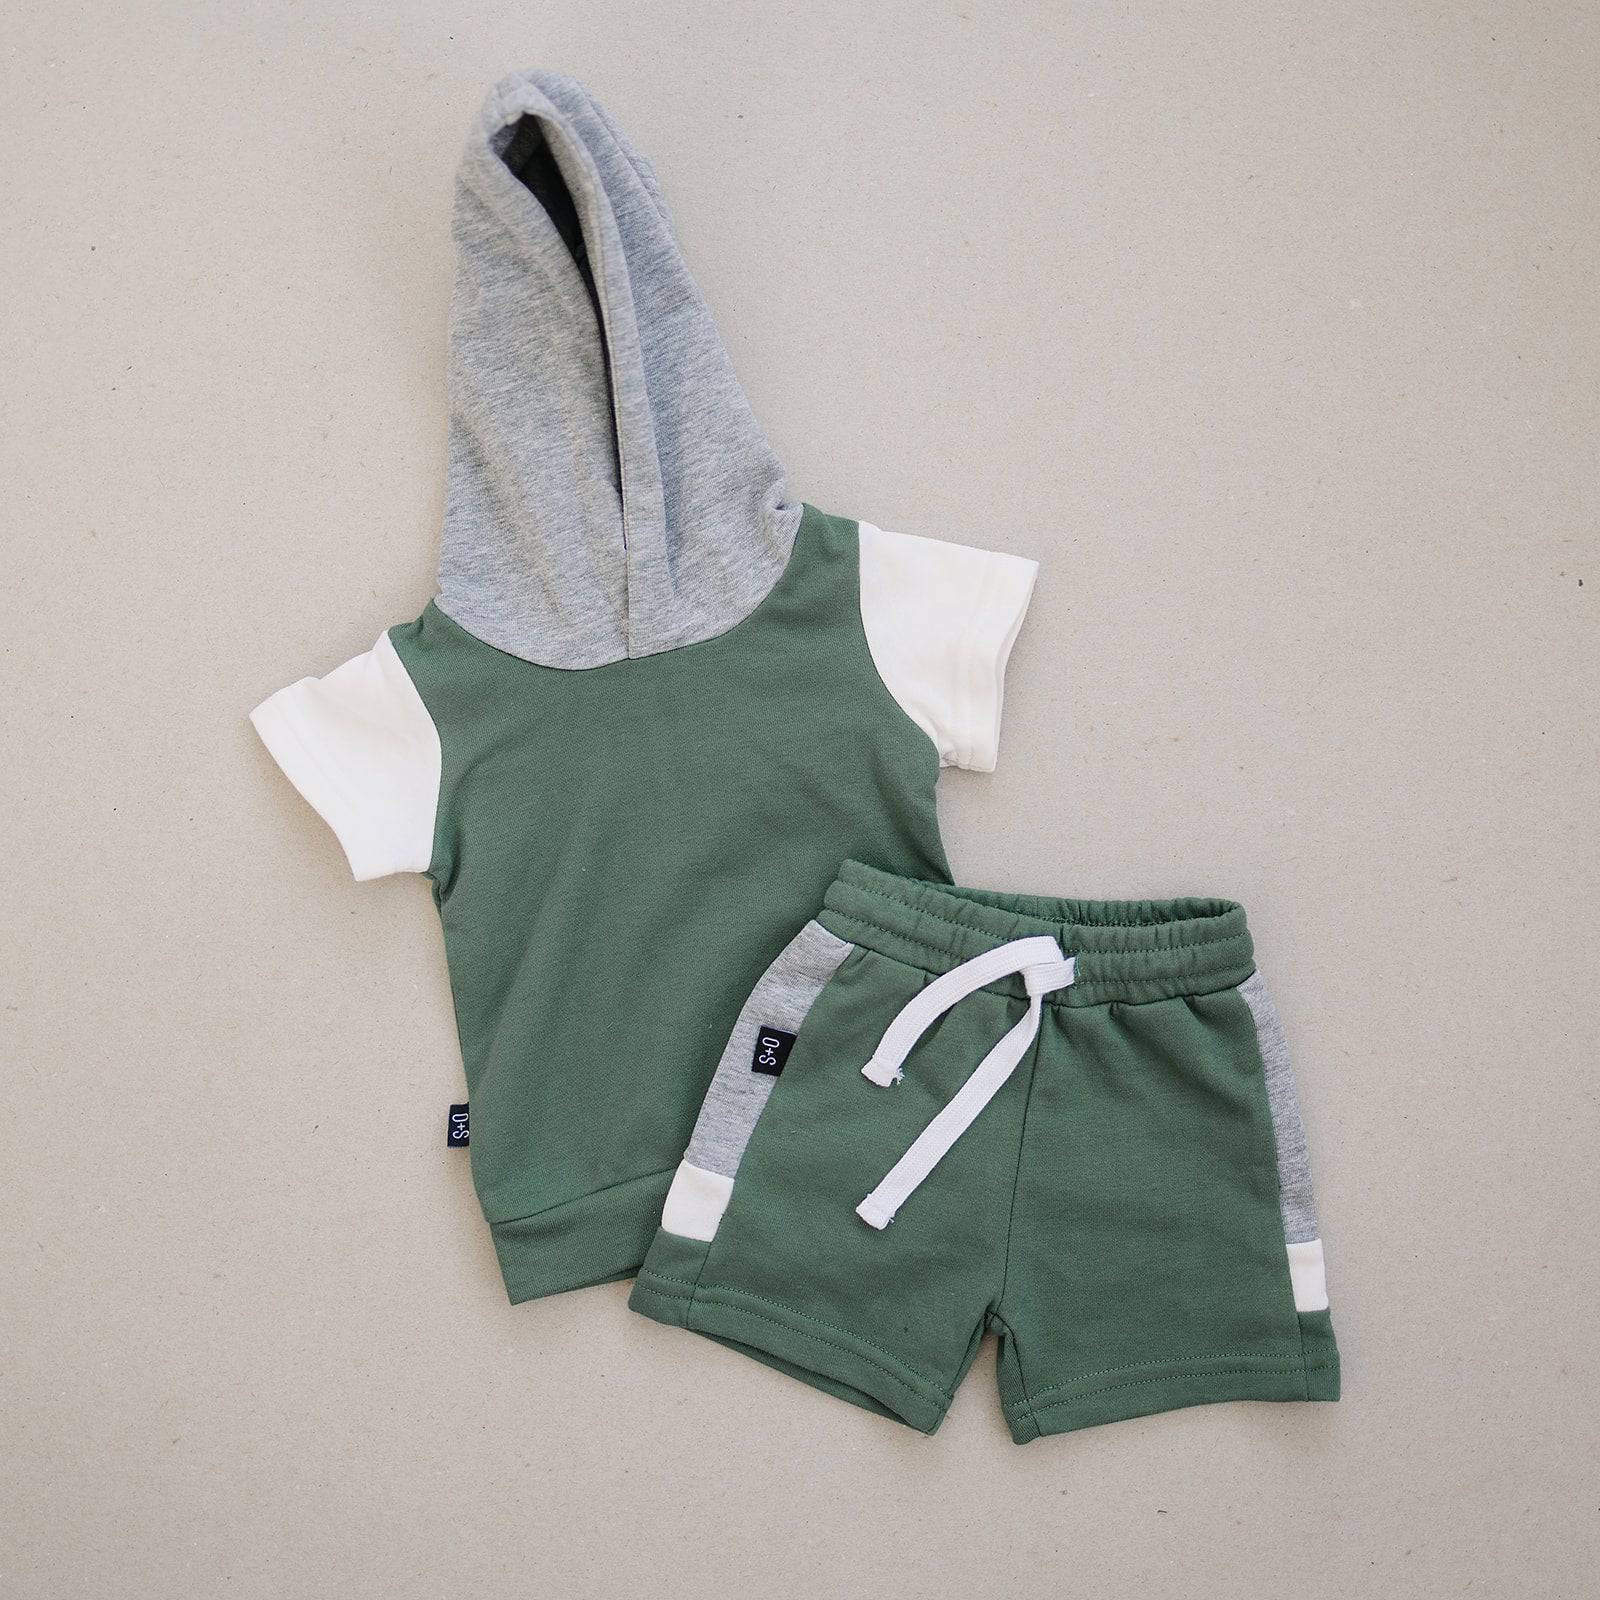 Owen Shirt & Short Set - Green - Twinkle Twinkle Little One